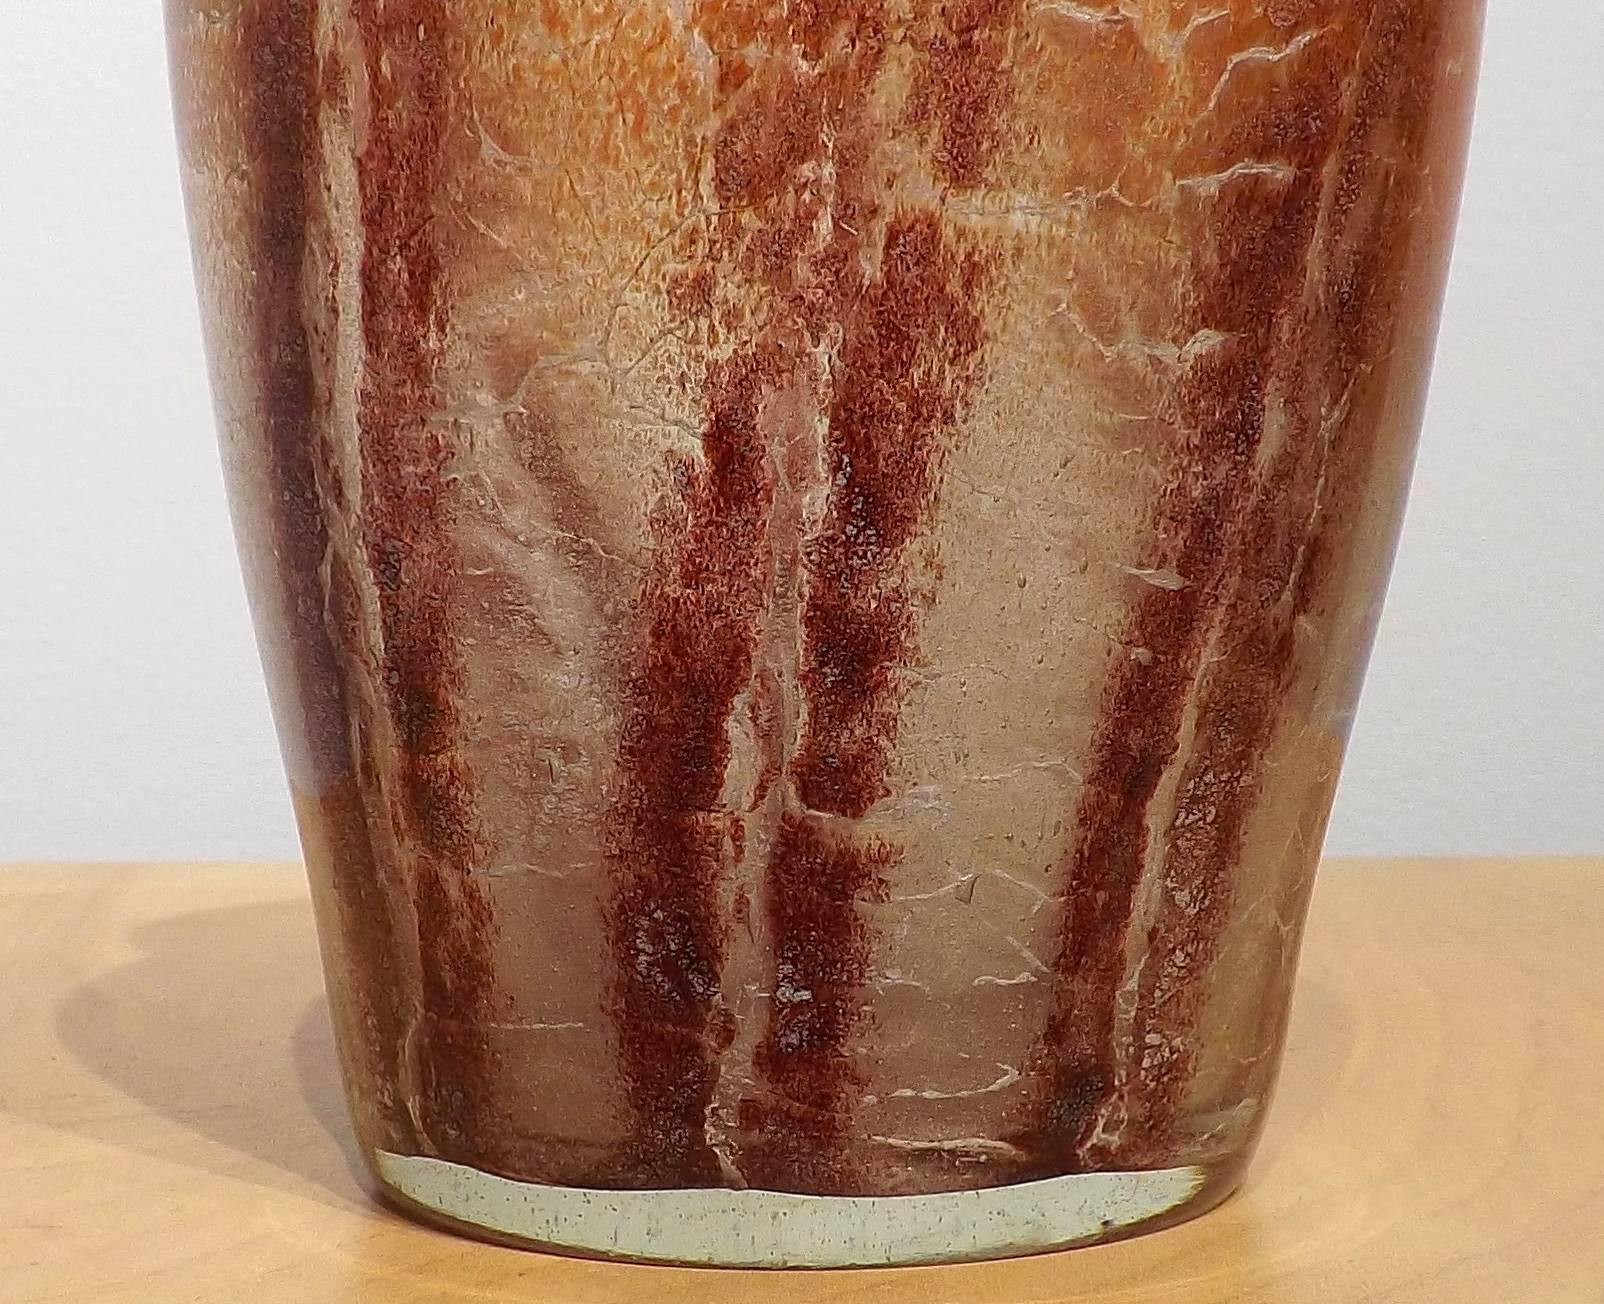 wmf glass vase